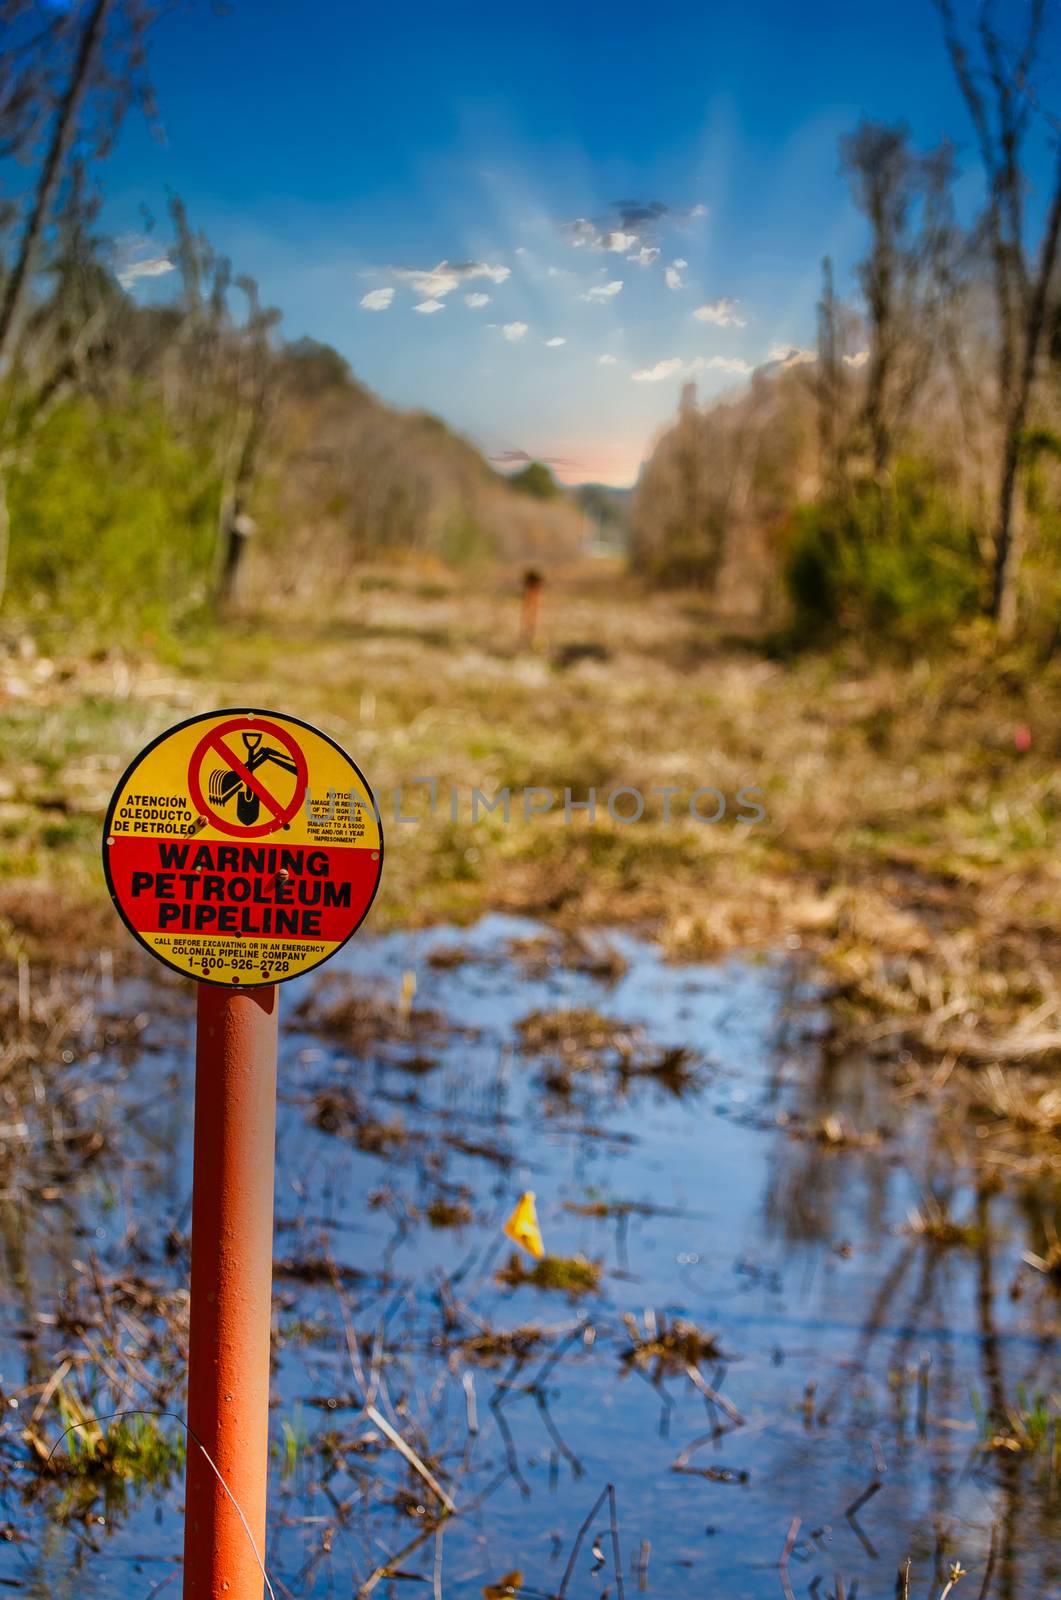 A petroleum pipeline easement running through a wetland marsh environment